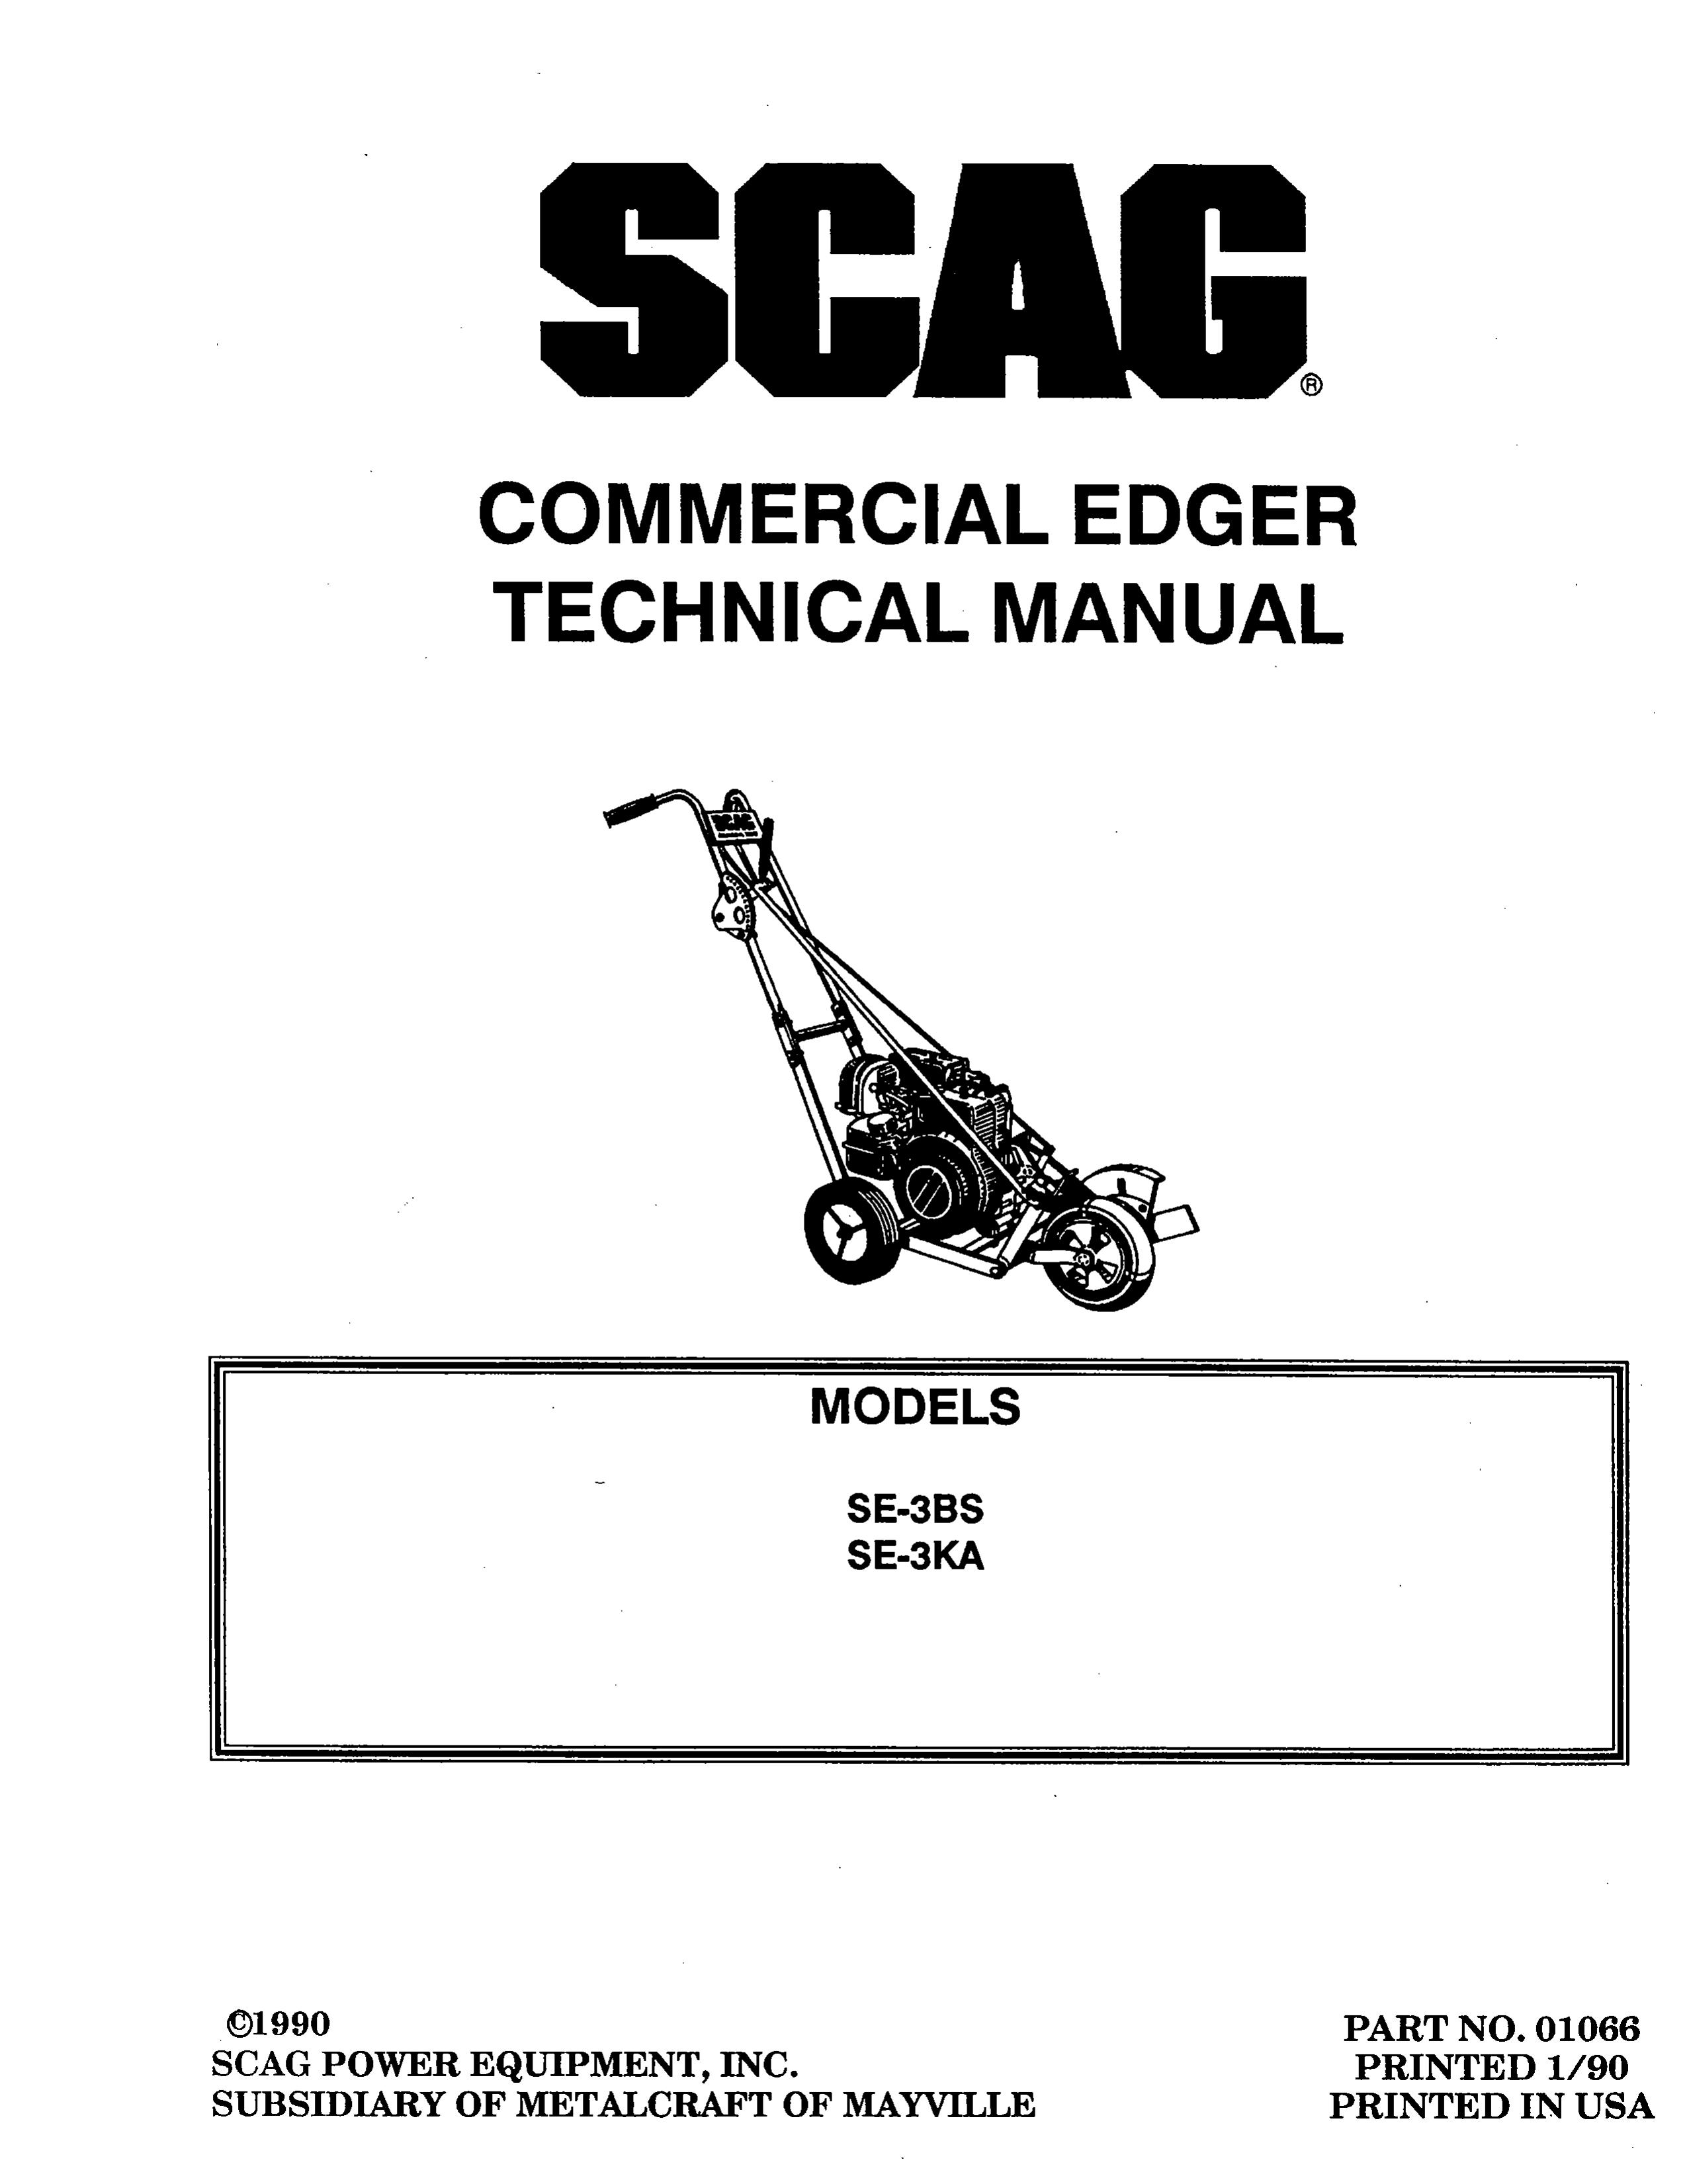 Scag Power Equipment SE-3KA Edger User Manual